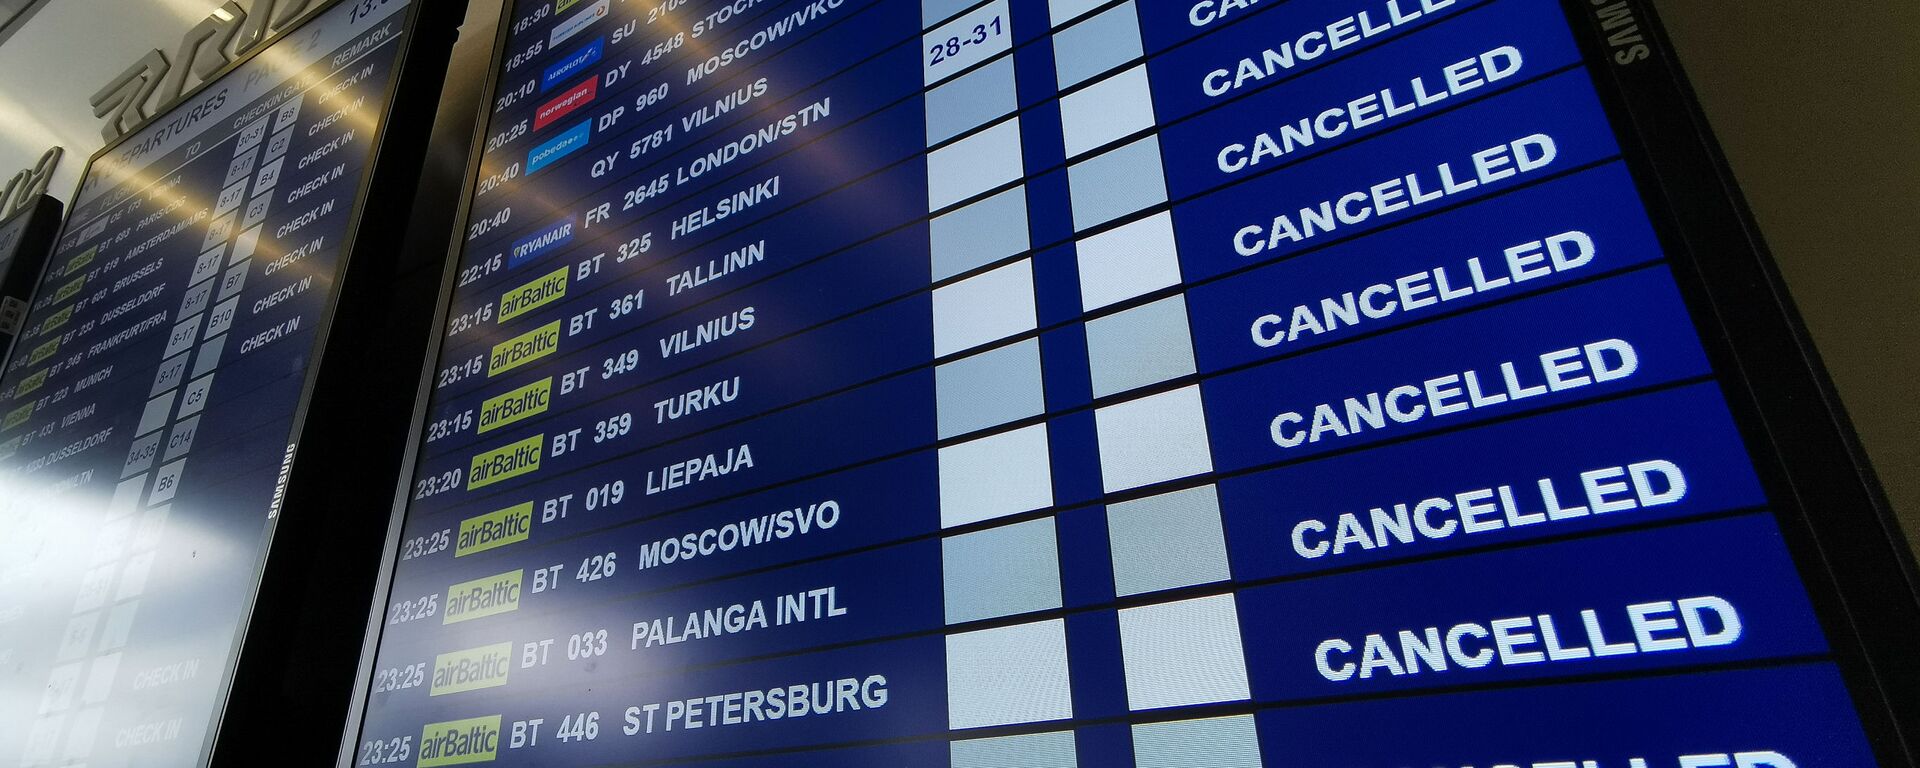 Табло вылета аэропорту Рига со списком отмененных рейсов авиакомпании airBaltic - Sputnik Латвия, 1920, 08.02.2021